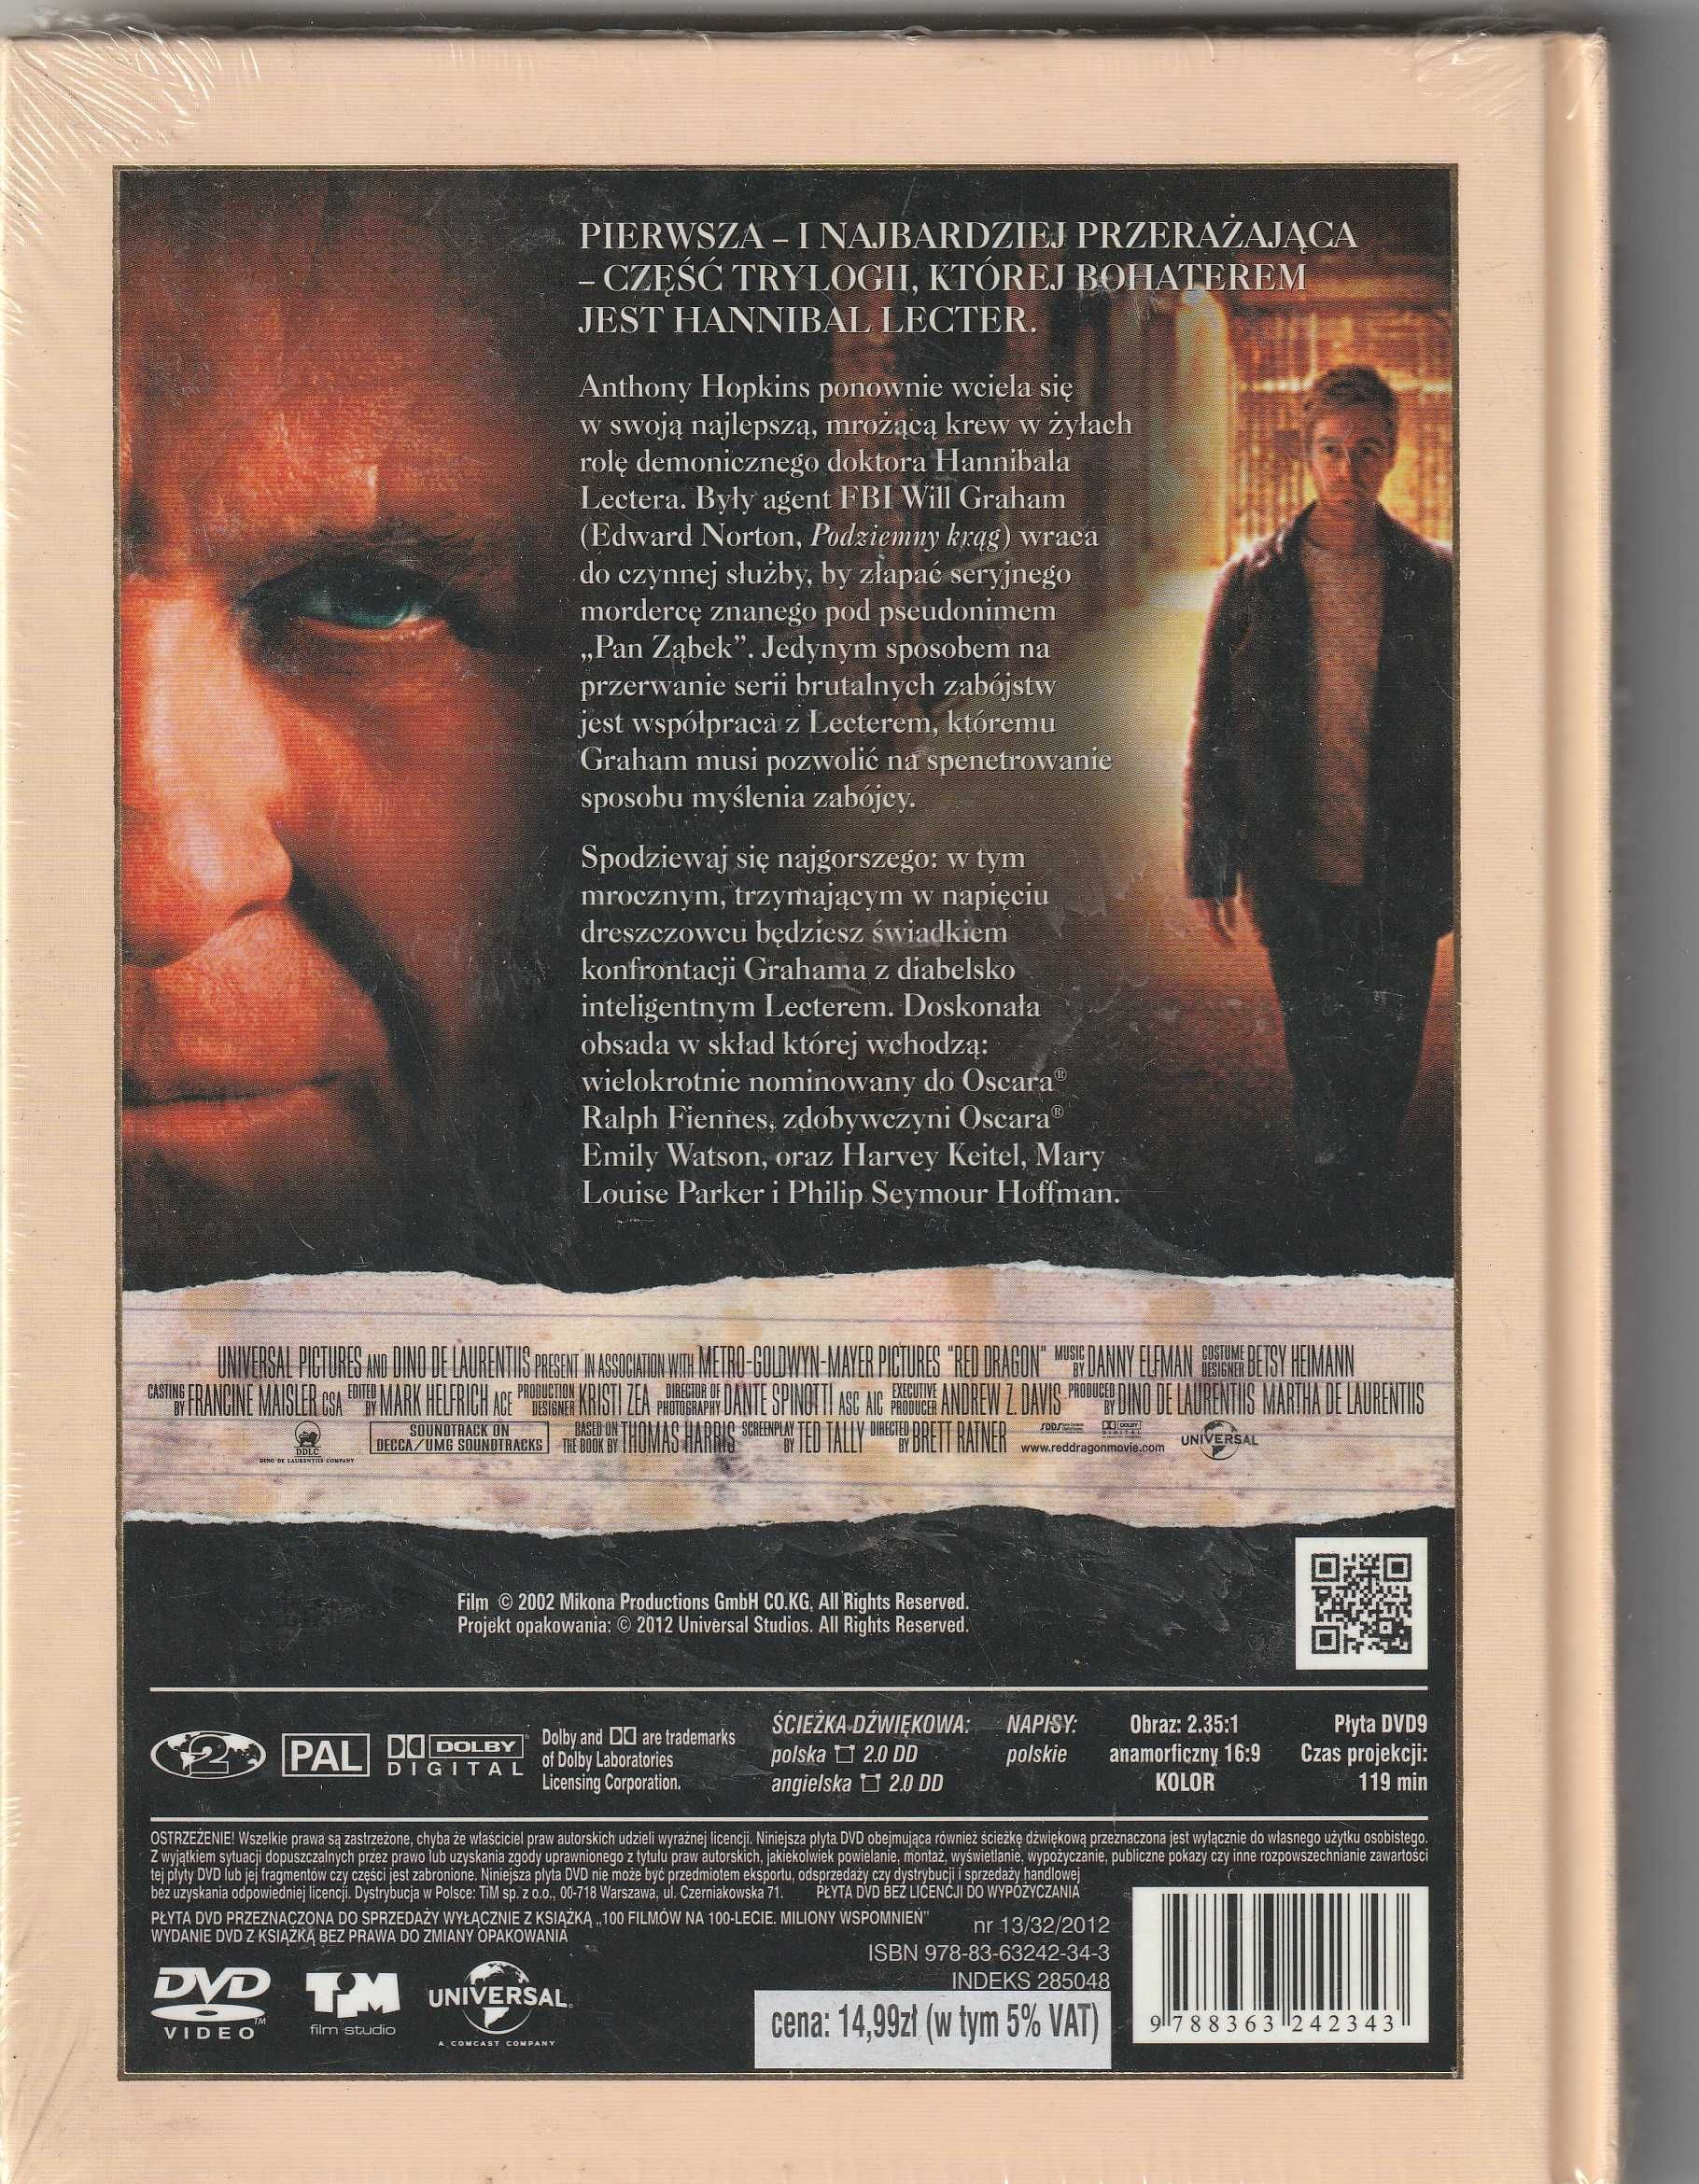 CZERWONY SMOK  Anthony Hopkins,DVD